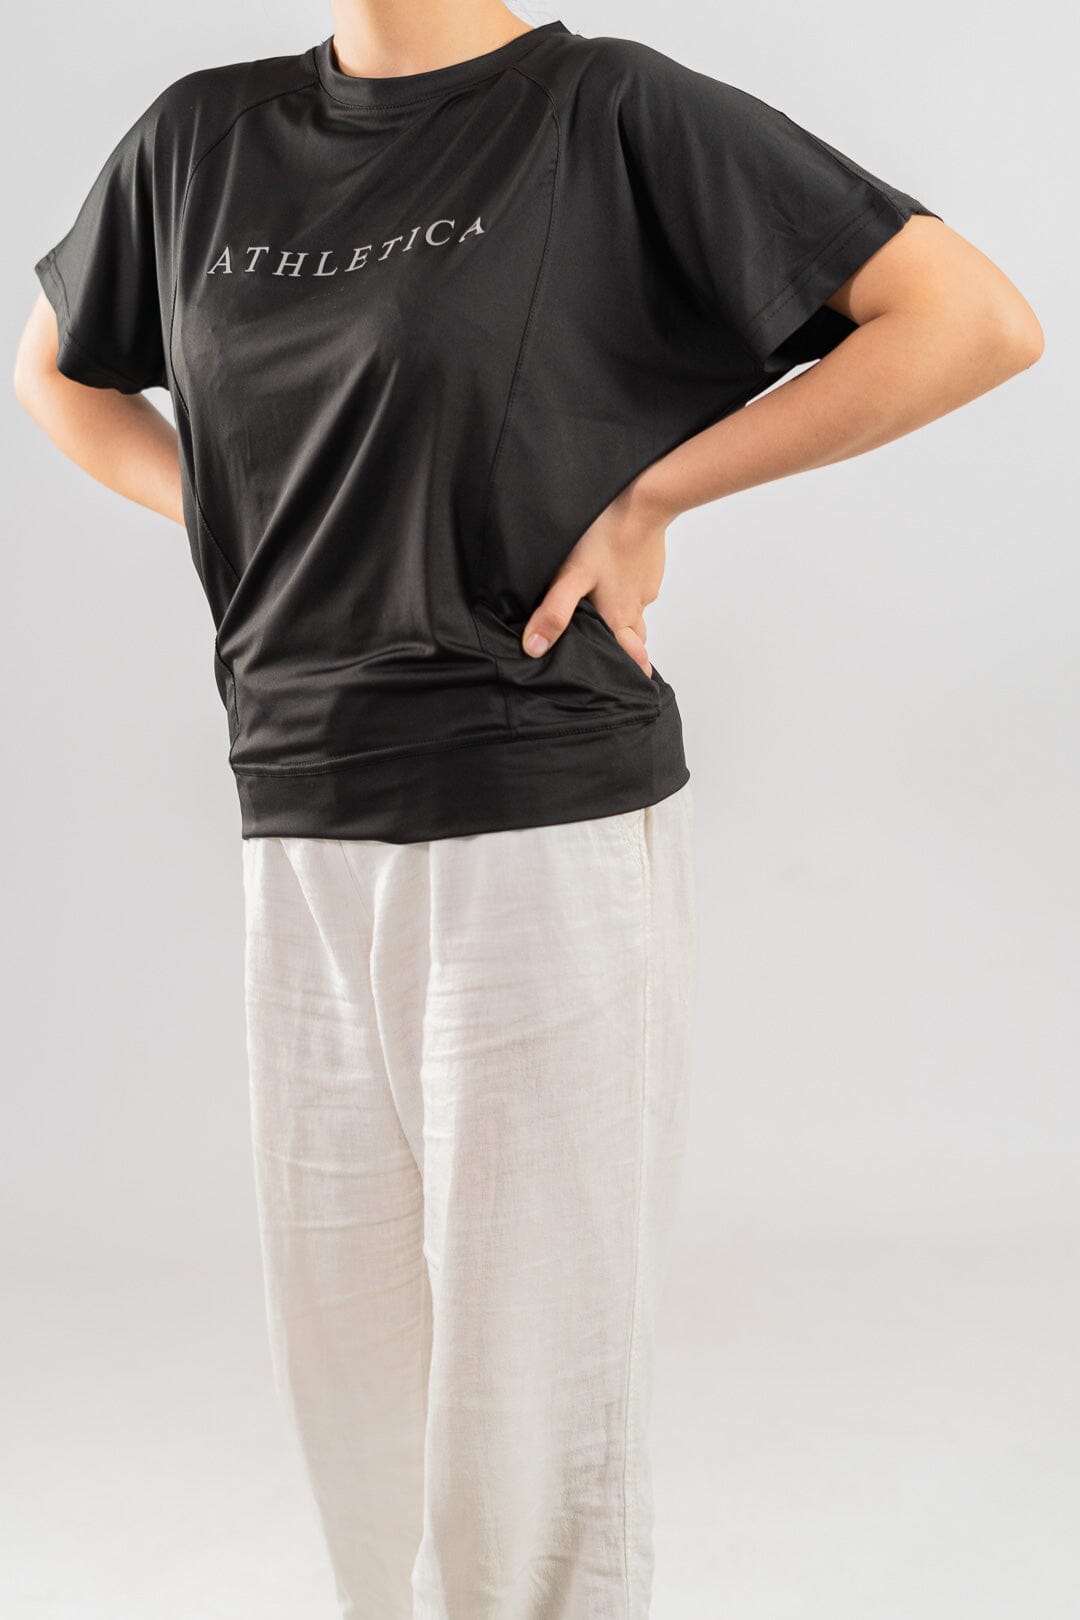 Polo Athletica Women's Raglan Sleeve Activewear Tee Shirt Women's Tee Shirt Polo Republica 